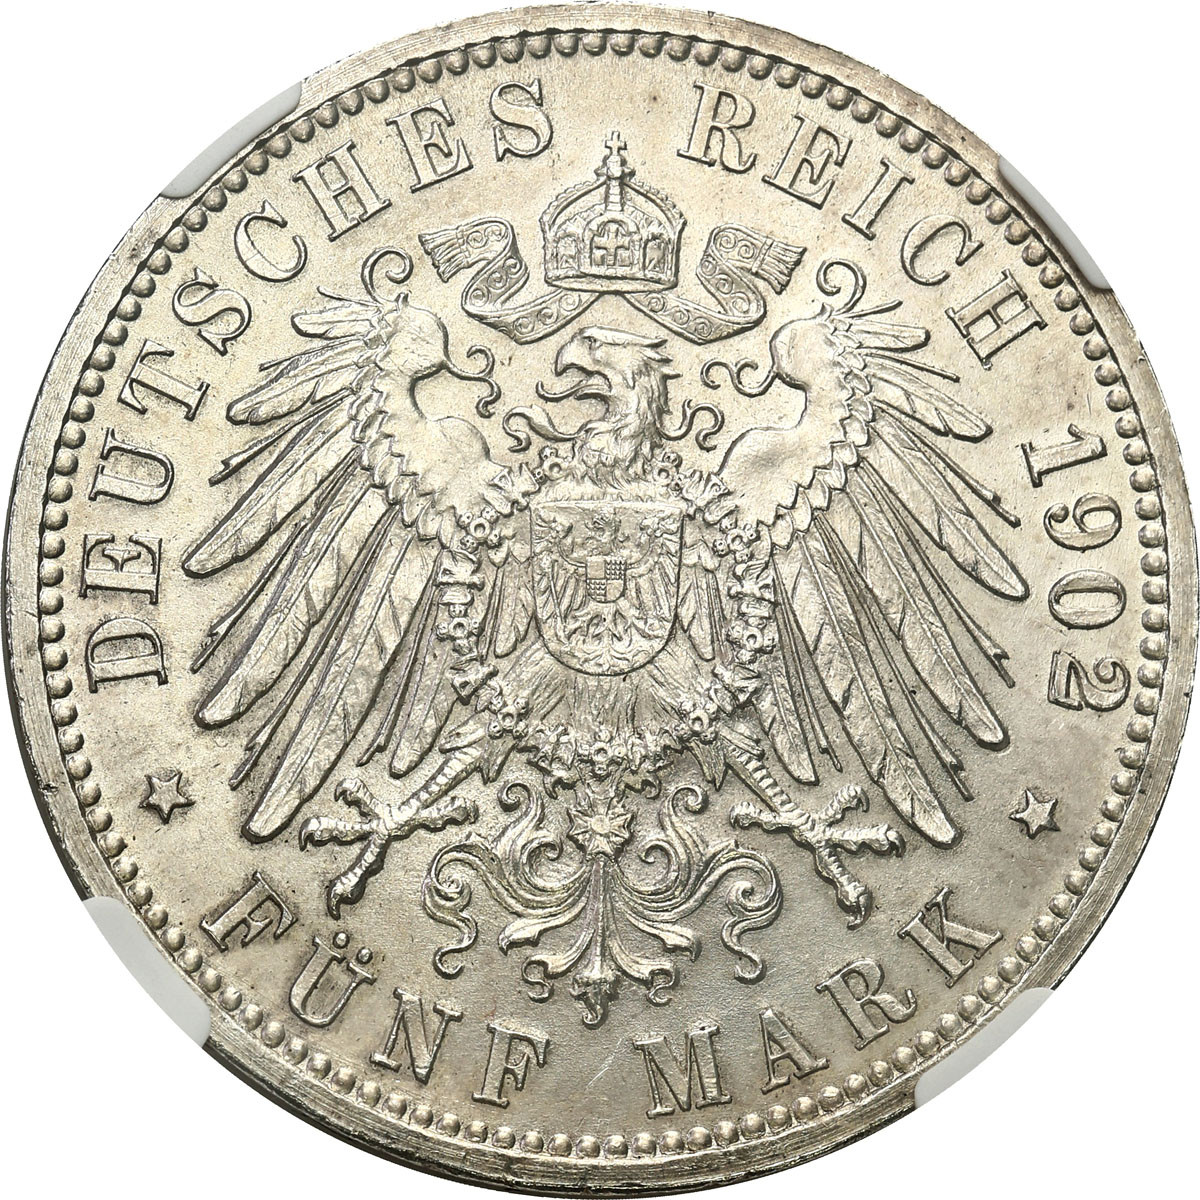 Niemcy, Badenia. 5 marek 1902, Karlsruhe NGC MS63 - PIĘKNE